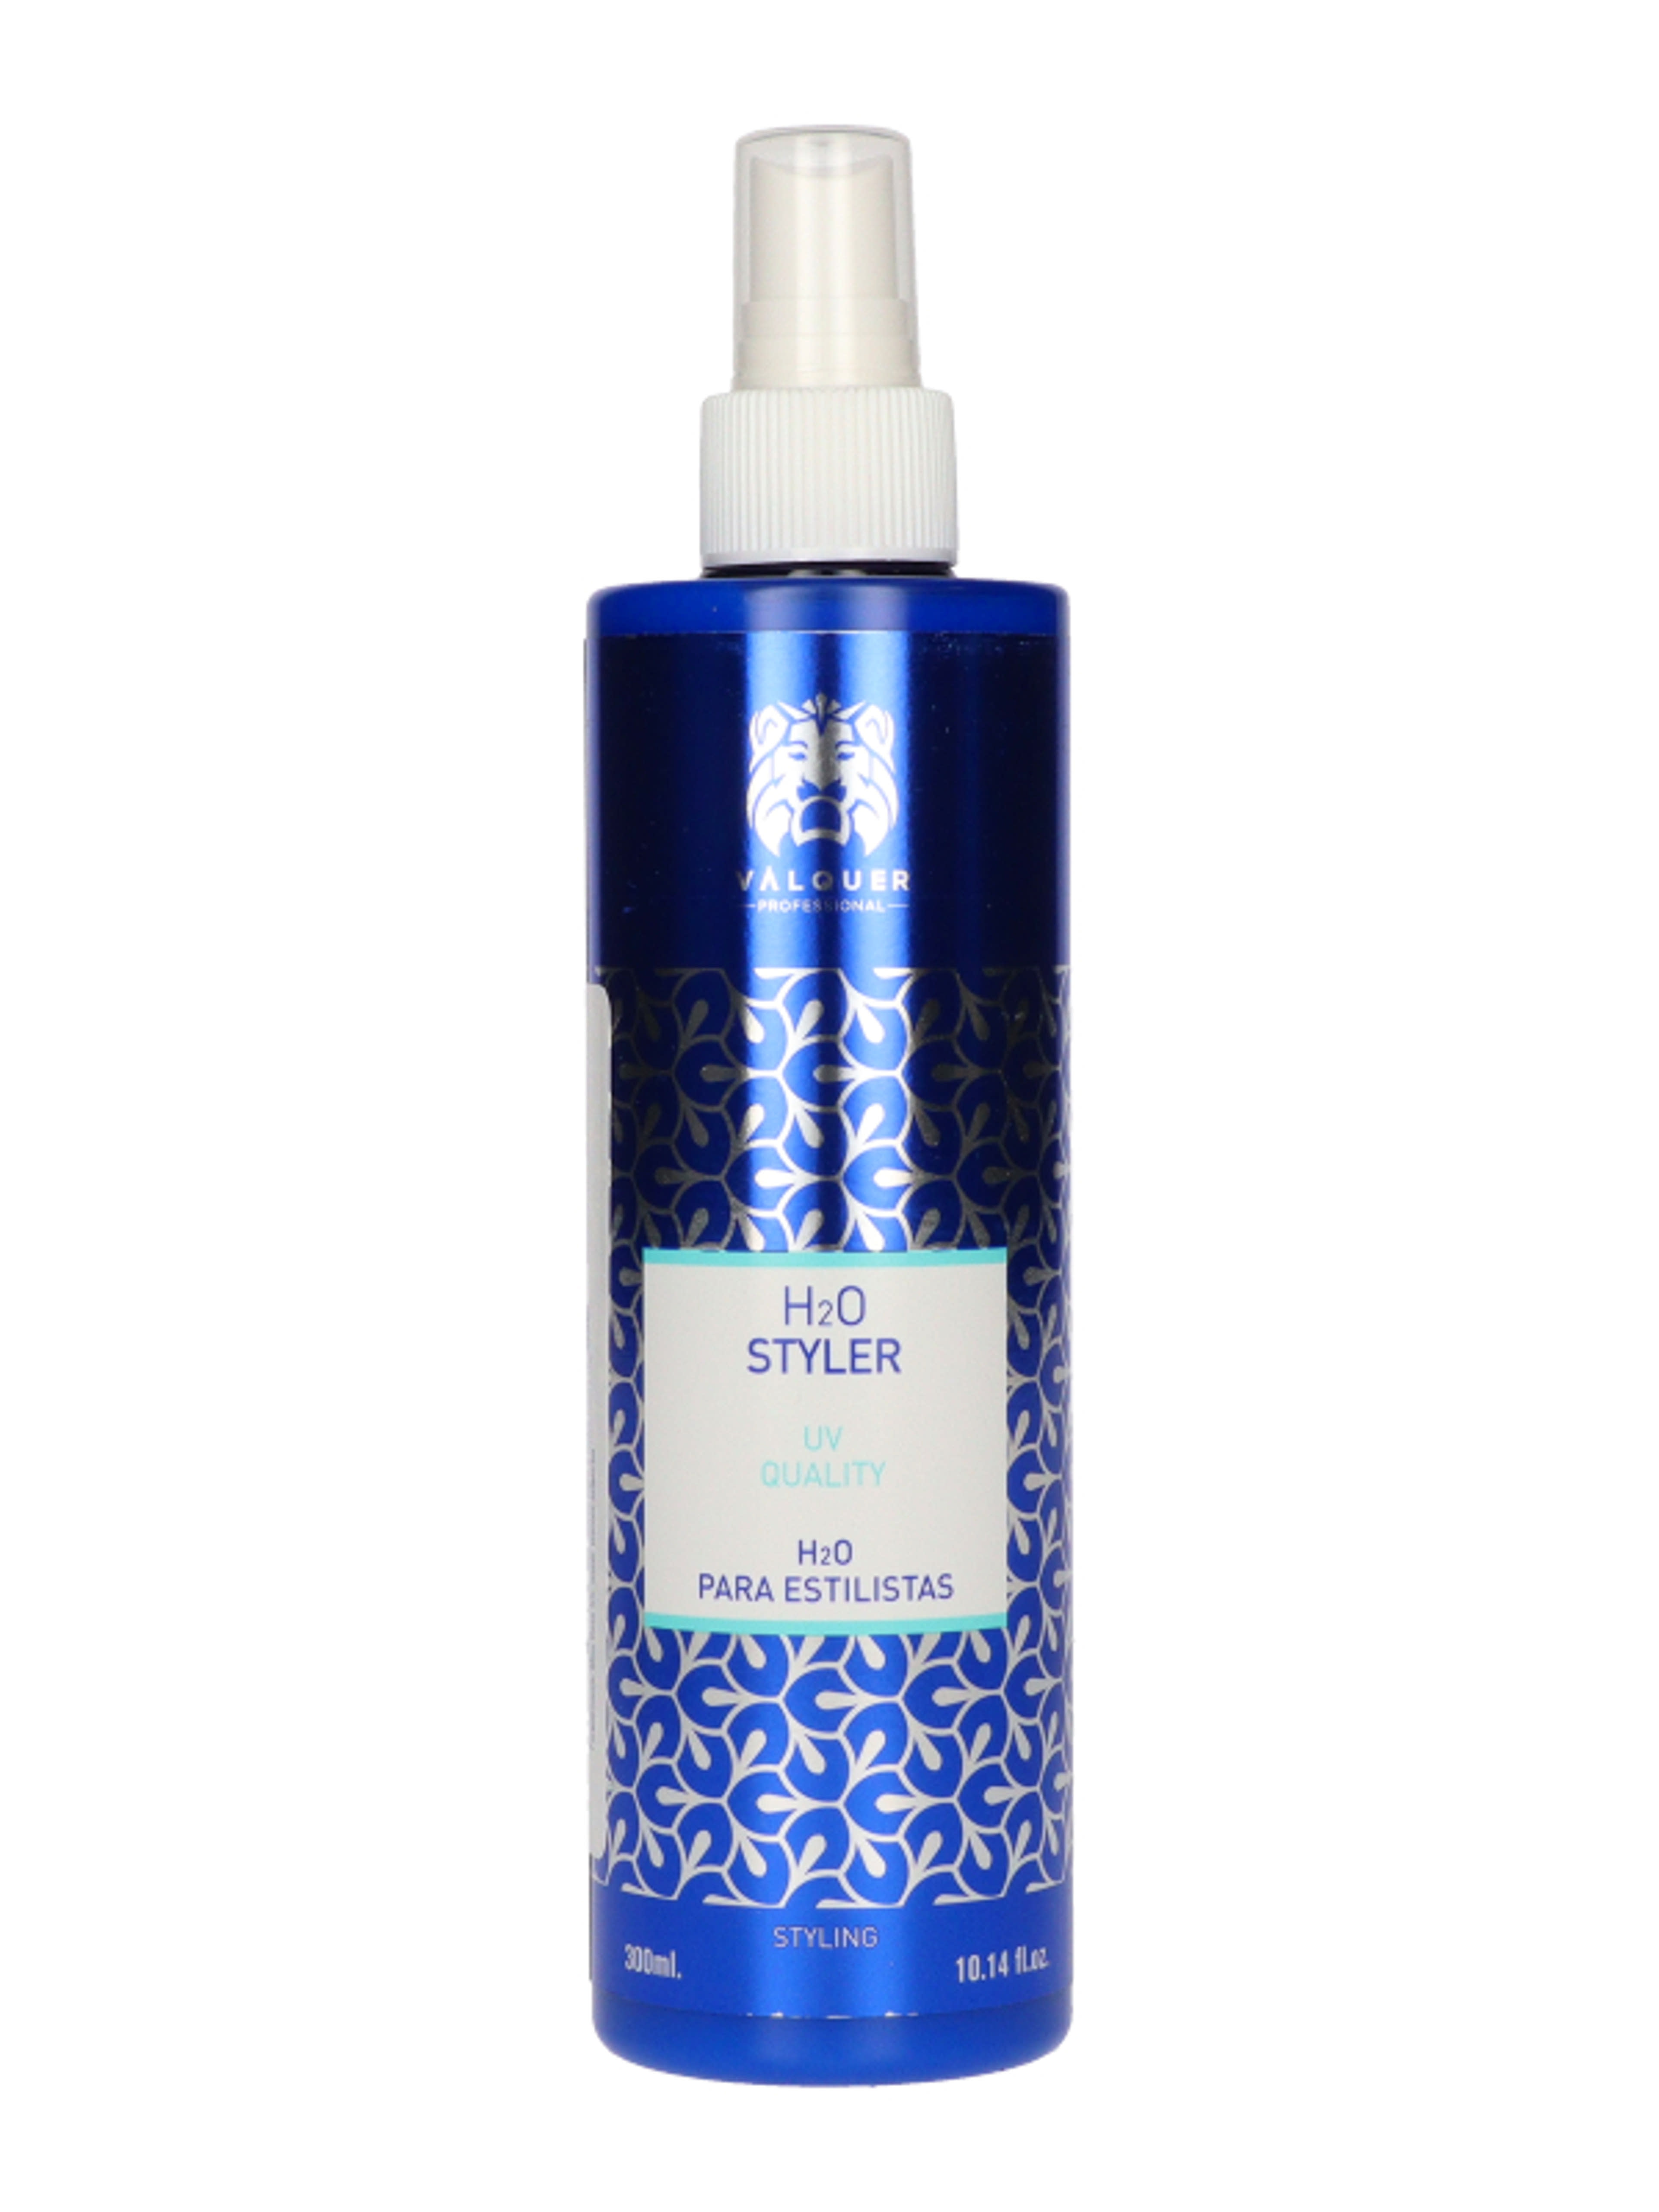 Valquer UV szürős hajfixáló spray - 300 ml